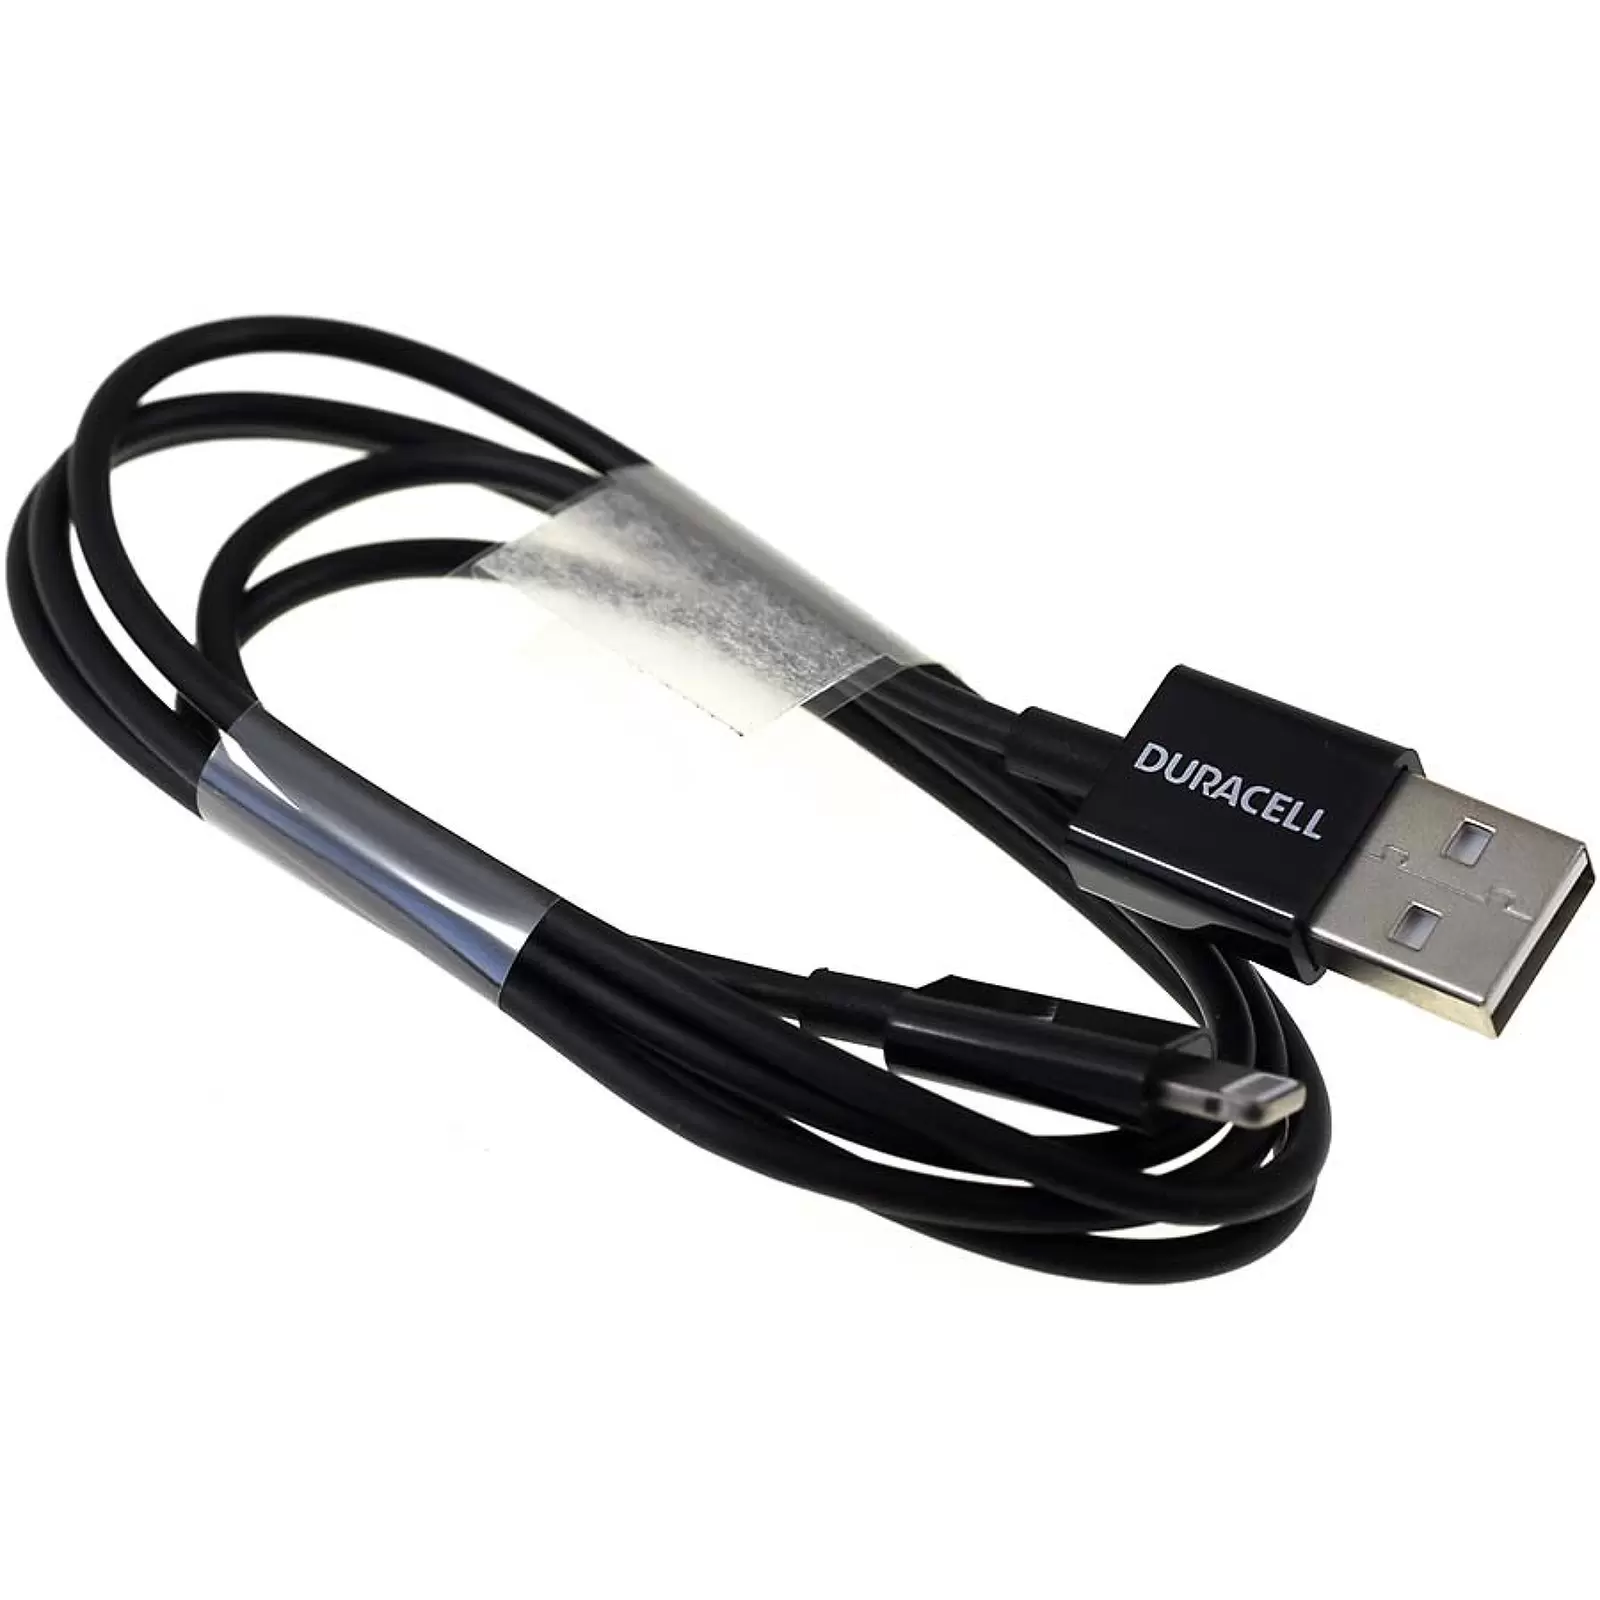 Verbindungskabel Lightning auf USB für iPhone 5, 5s, 6, iPad 4 etc, 1m